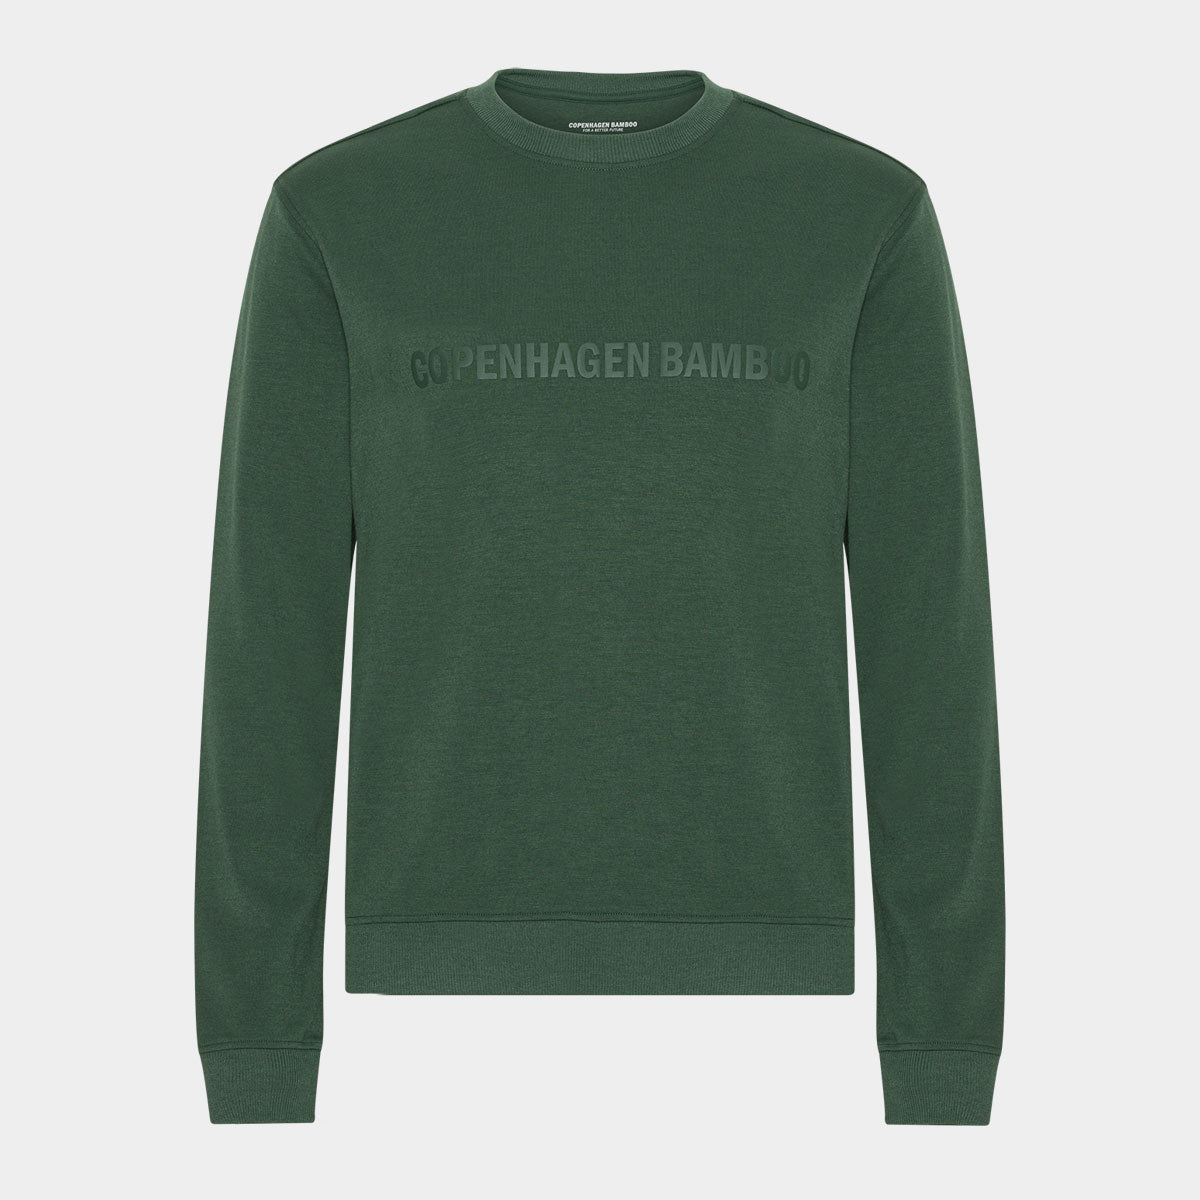 Billede af Grøn bambus sweatshirt med logo, XL hos Bambustøj.dk